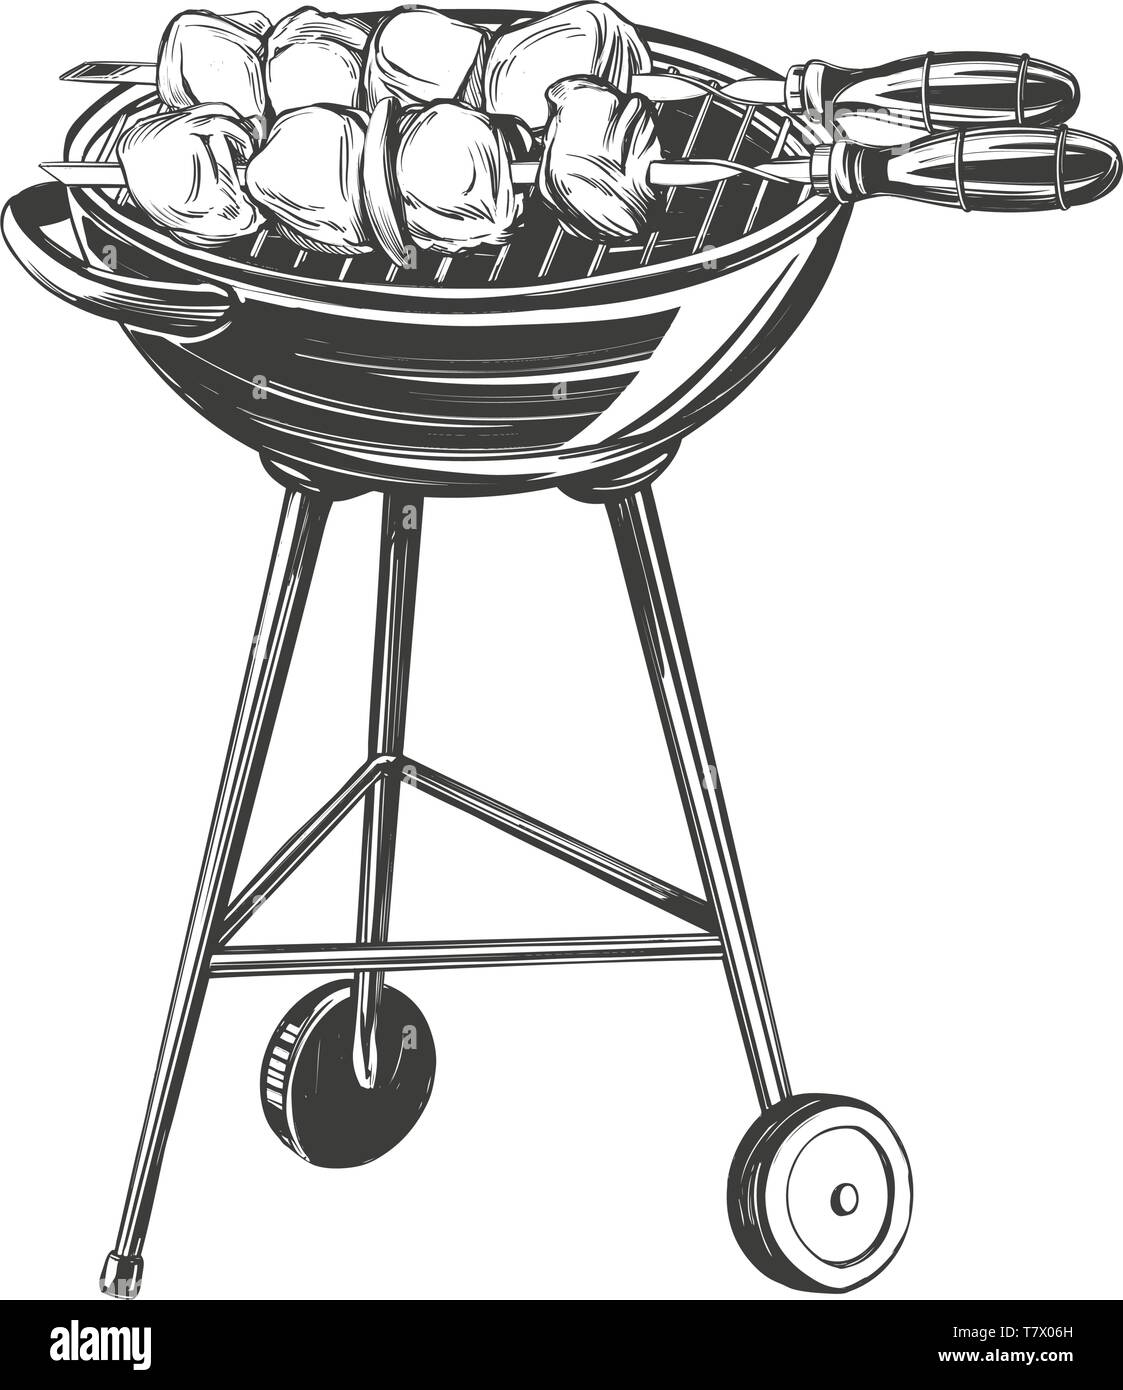 Kebab, Schaschlik, gegrillte Spieße, essen Fleisch, hand Vektor-illustration realistische Skizze gezeichnet Stock Vektor